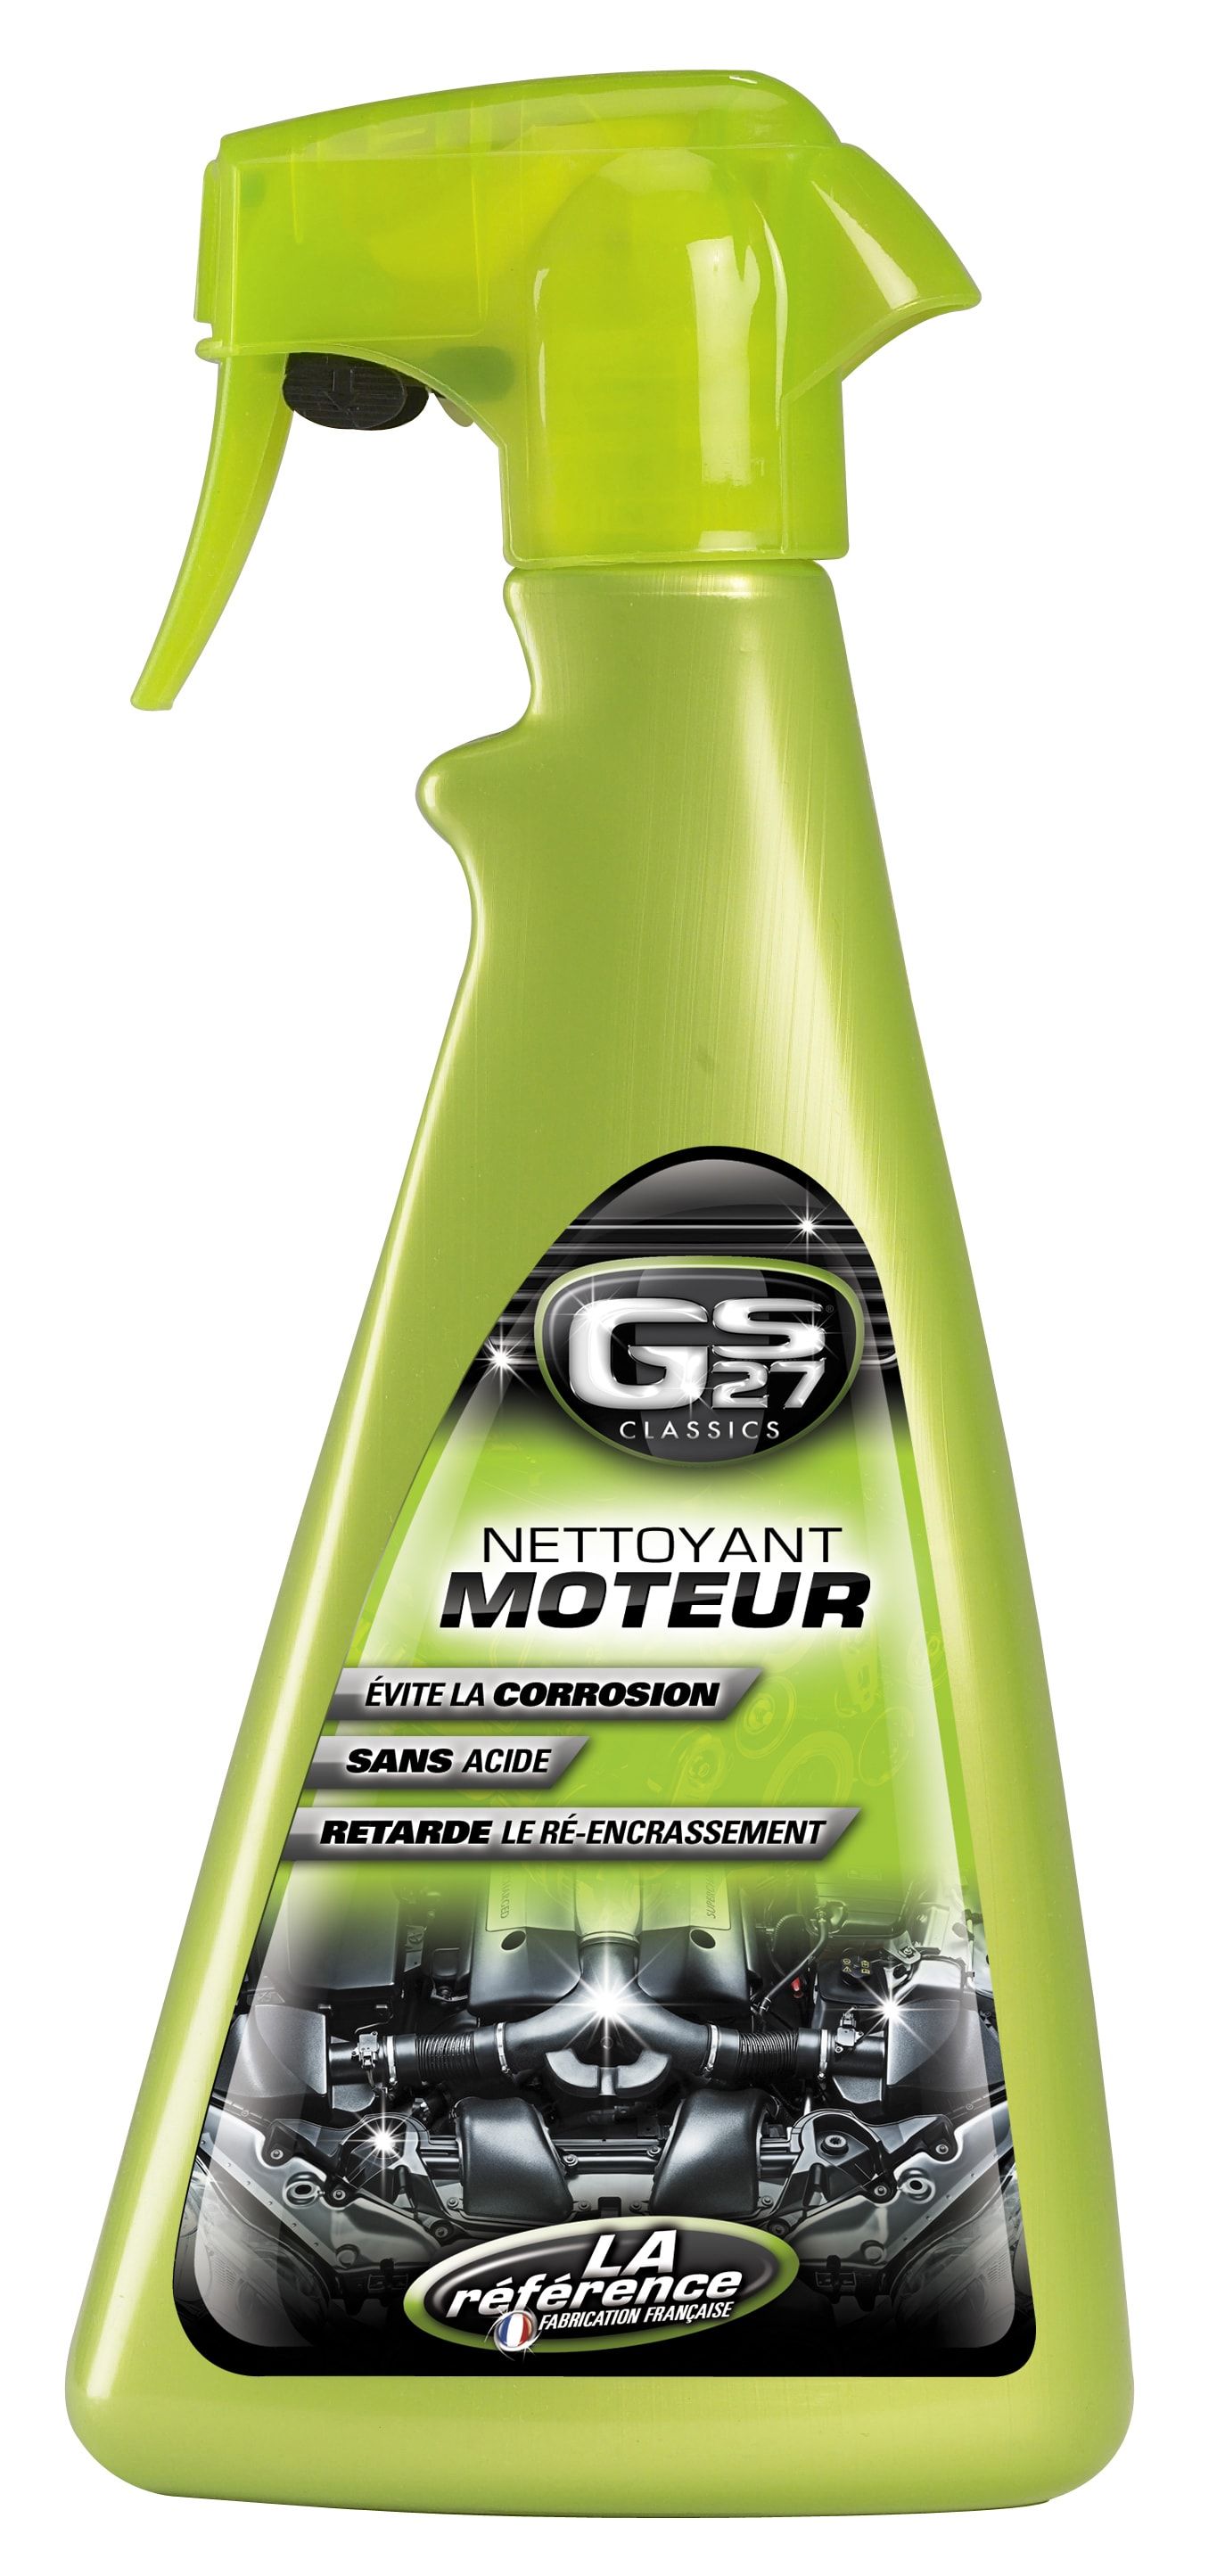 Nettoyant Moteur - Entretien et Nettoyage Auto et Moto - GS27